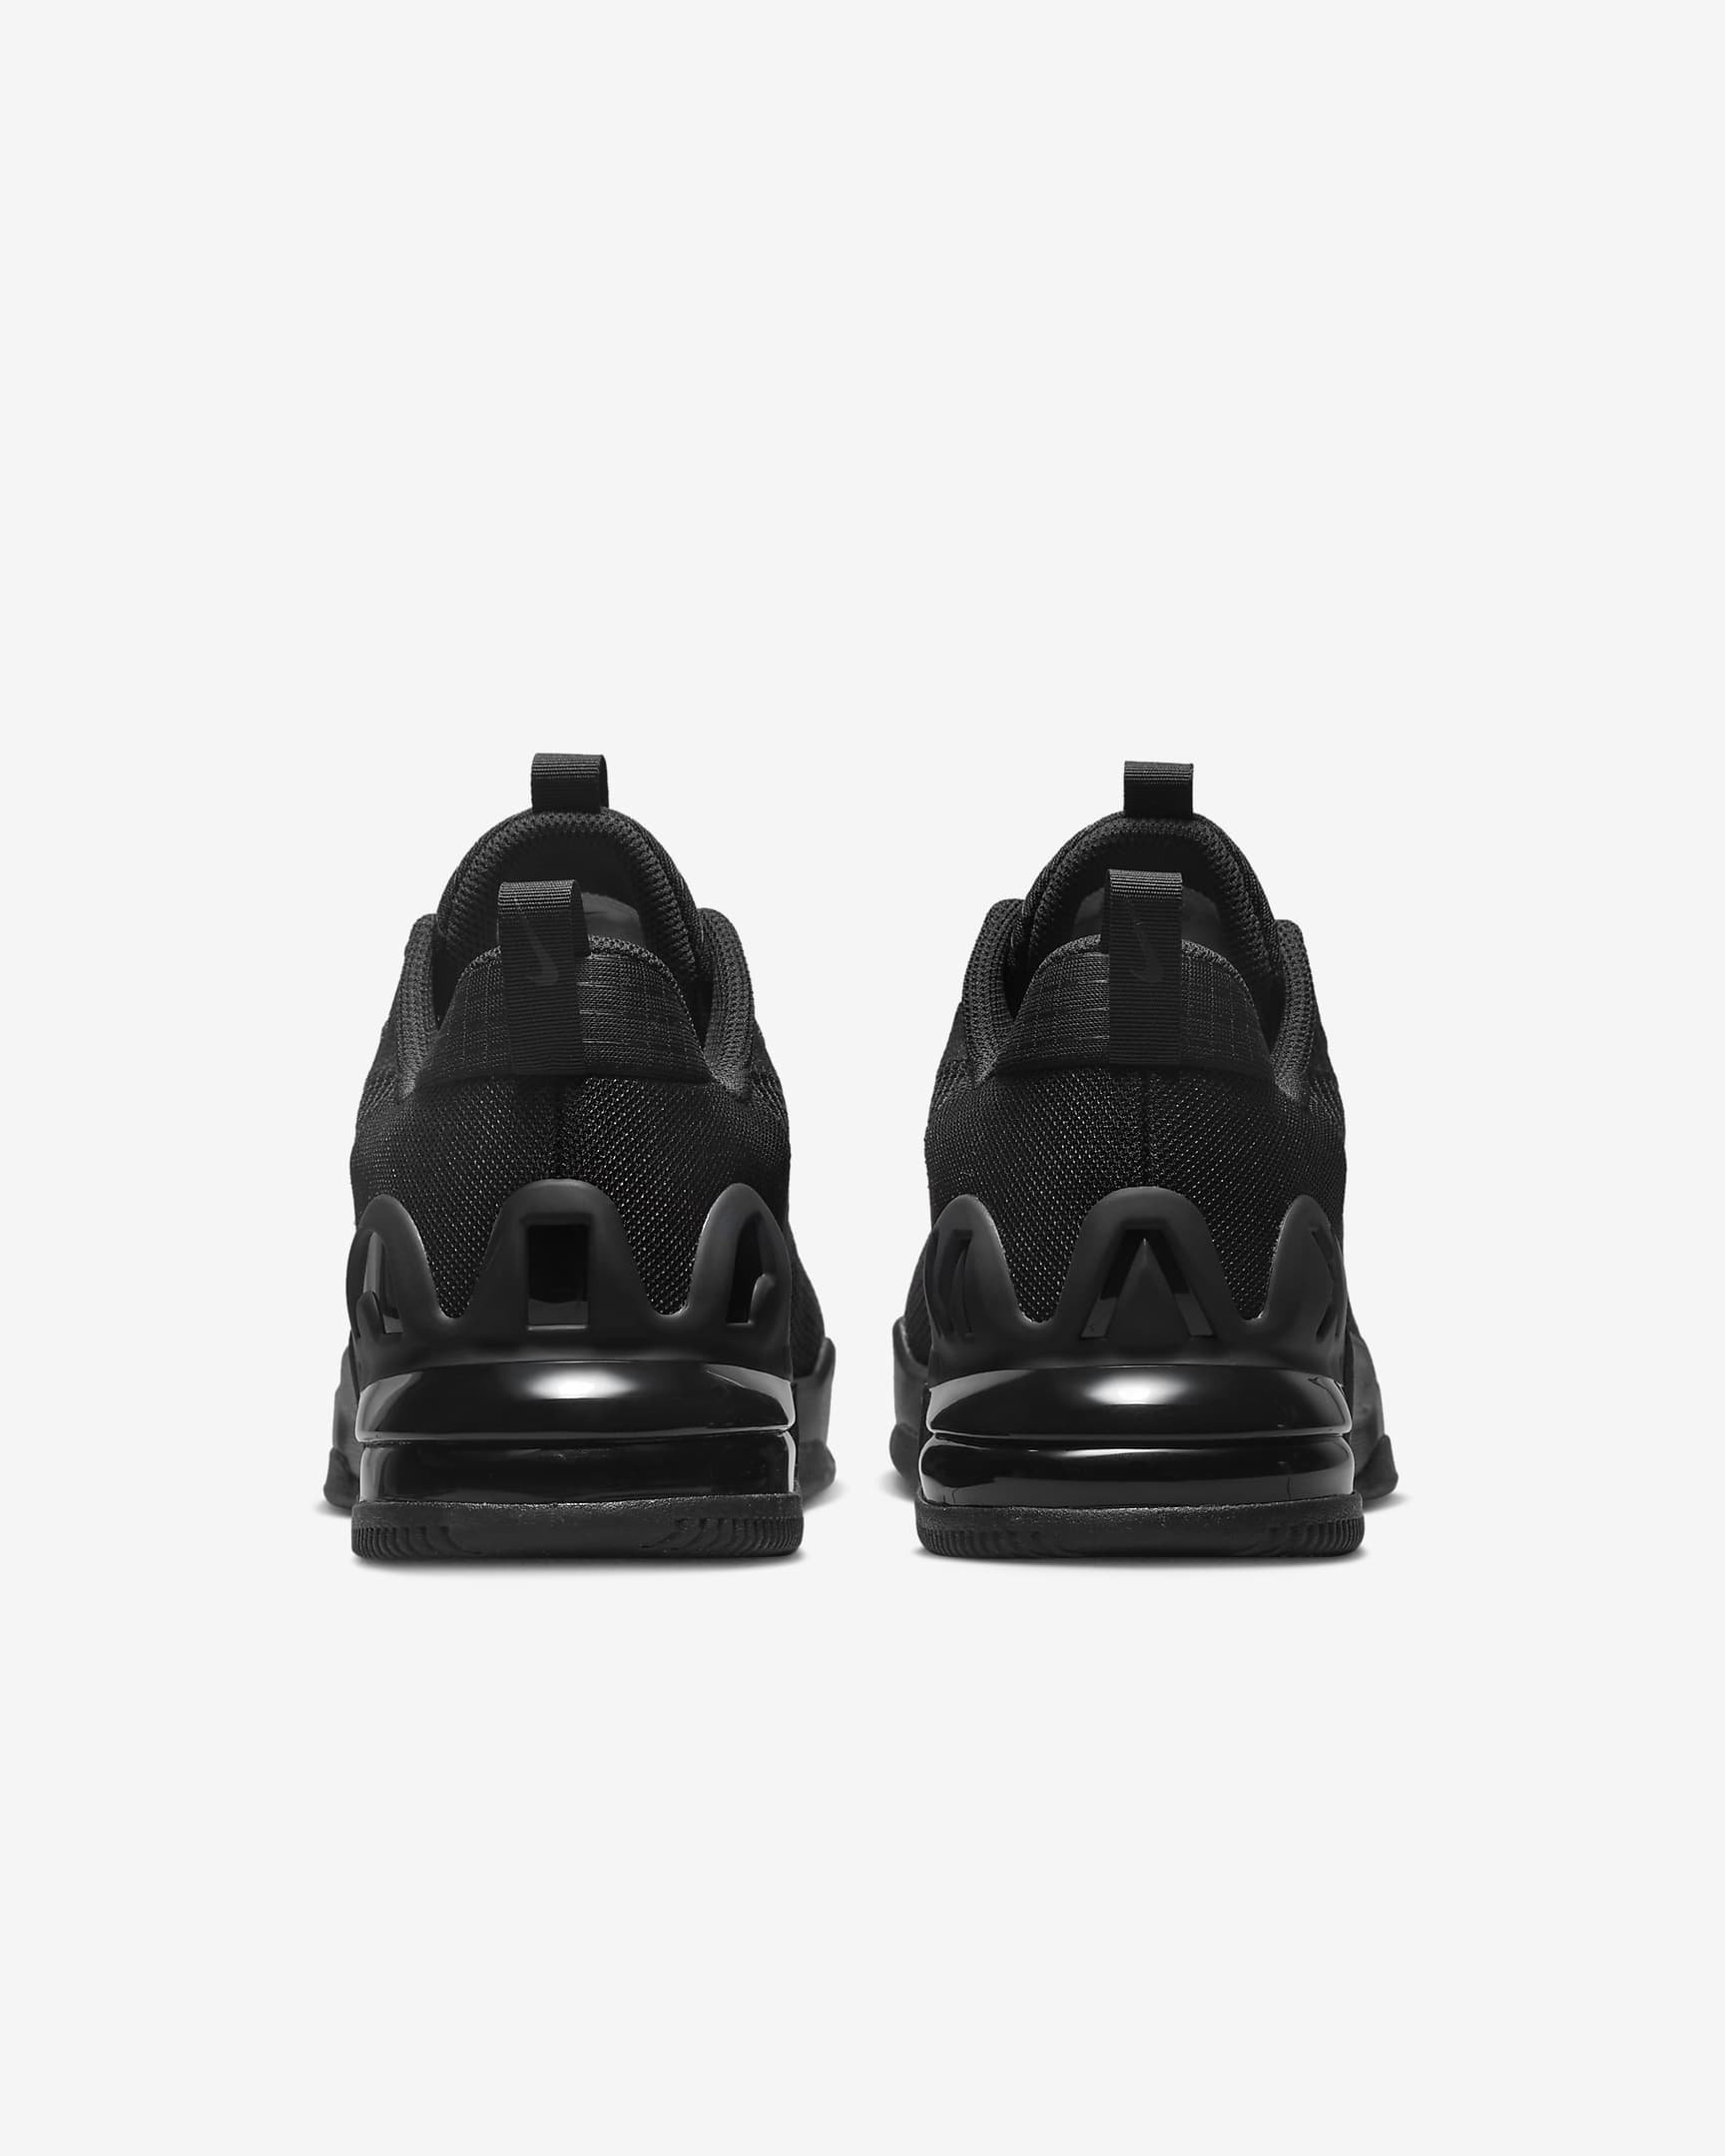 Chaussure d'entraînement Nike Air Max Alpha Trainer 5 pour homme - Noir/Noir/Dark Smoke Grey